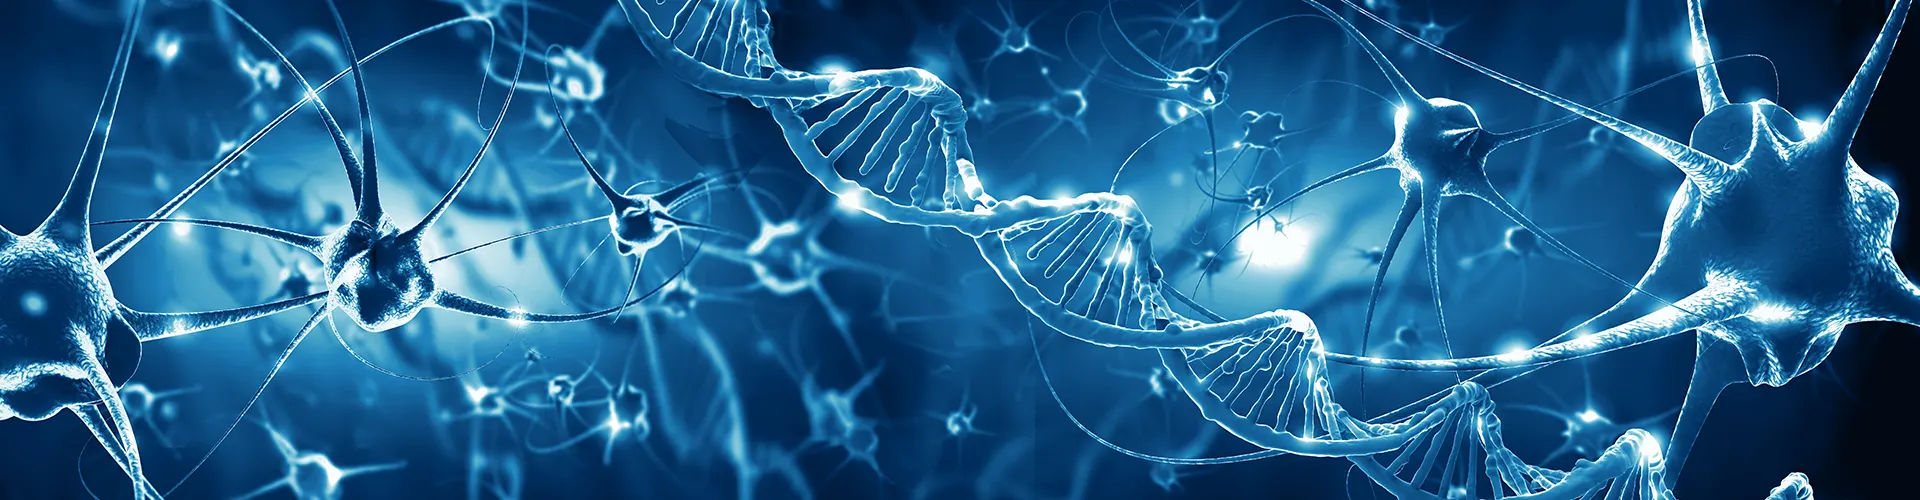 Illustration von Nerven- und DNA-Strängen auf blauen Hintergrund